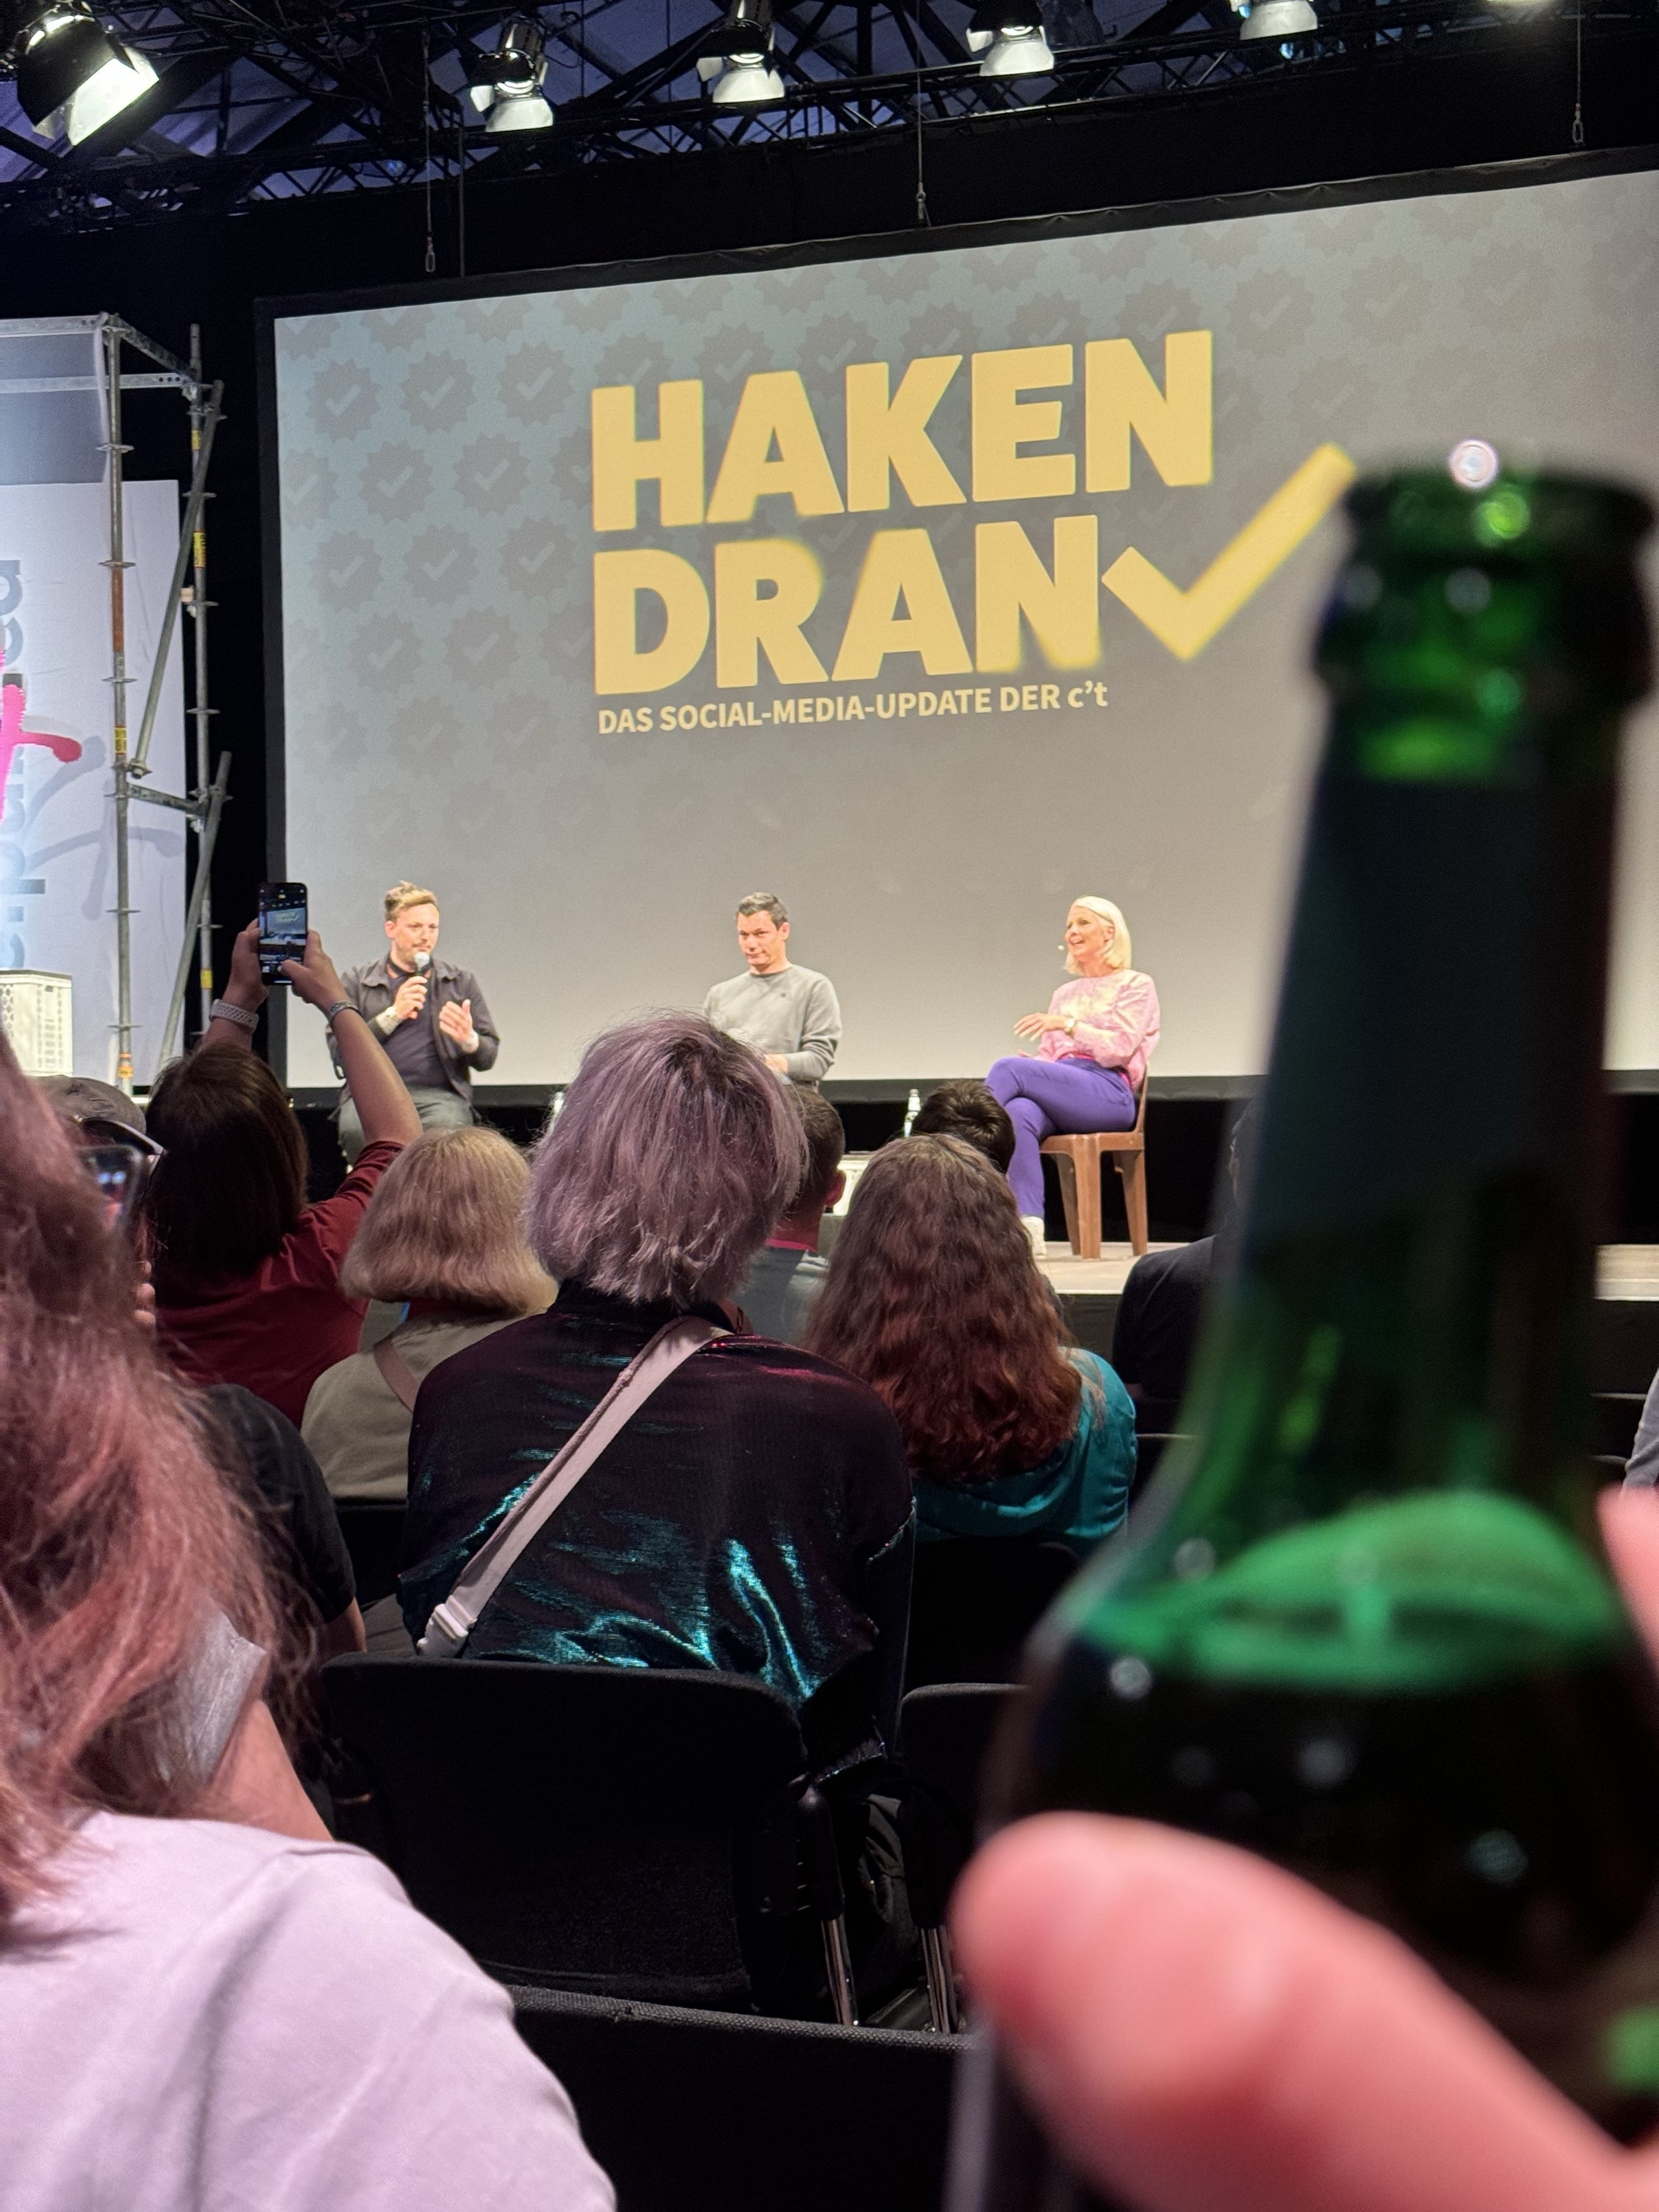 Podiumsdiskussion auf der Bühne mit drei Rednern, einem Publikum und dem Text "HAKEN DRAN" im Hintergrund. Im Vordergrund unscharf eine Bierflasche.